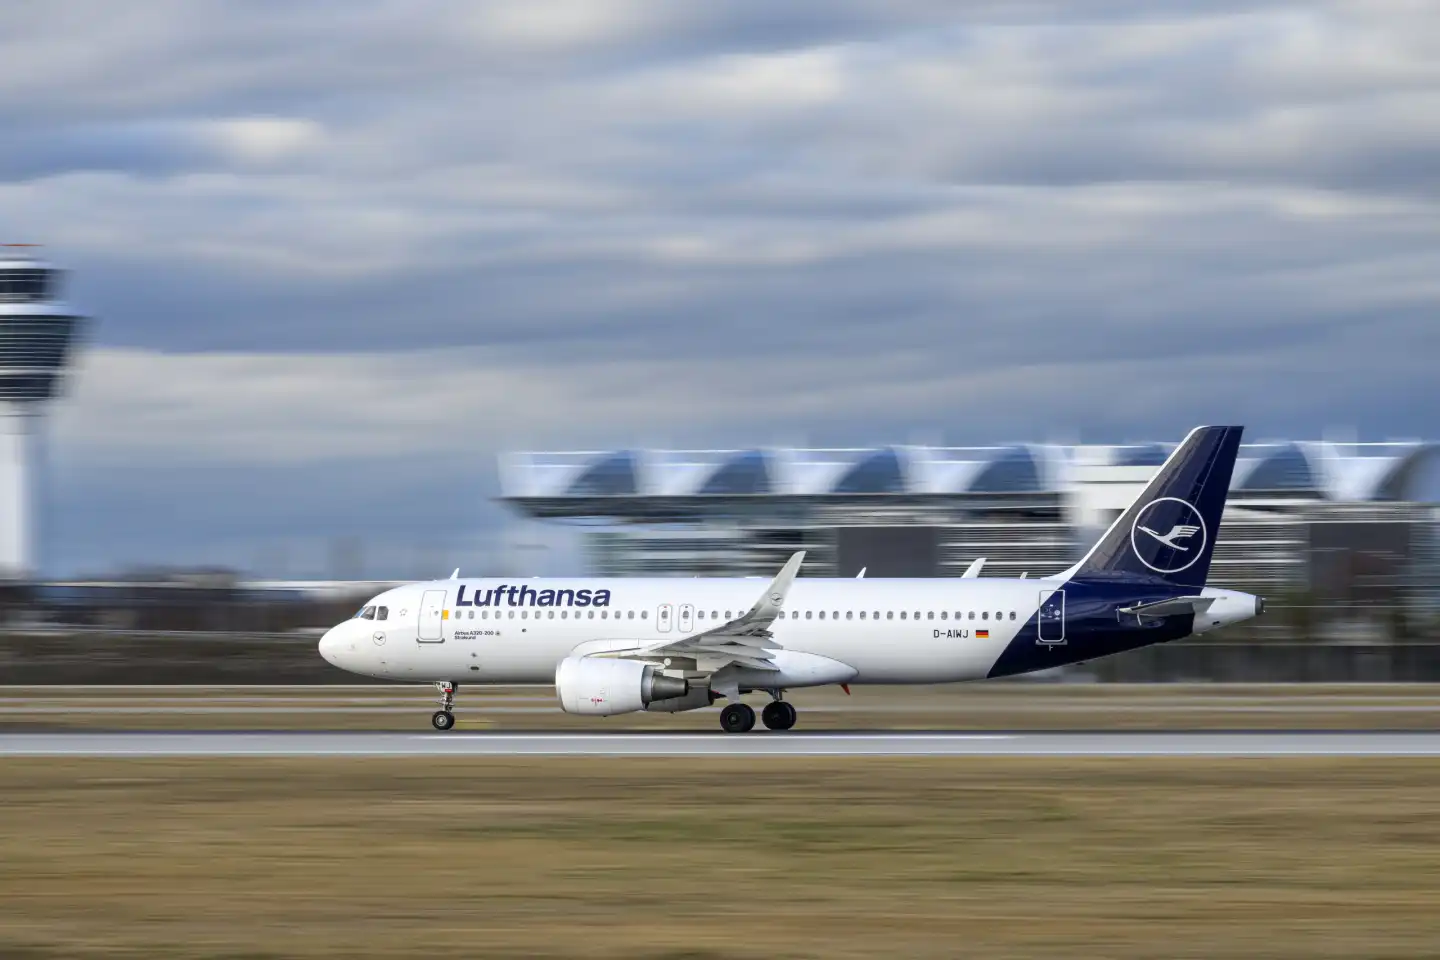 Lufthansa Airbus A320-214 mit dem Luftfahrzeugkennzeichen 
D-AIWJ startet auf der südlichen Landebahn 26L des Flughafens München MUC EDDM